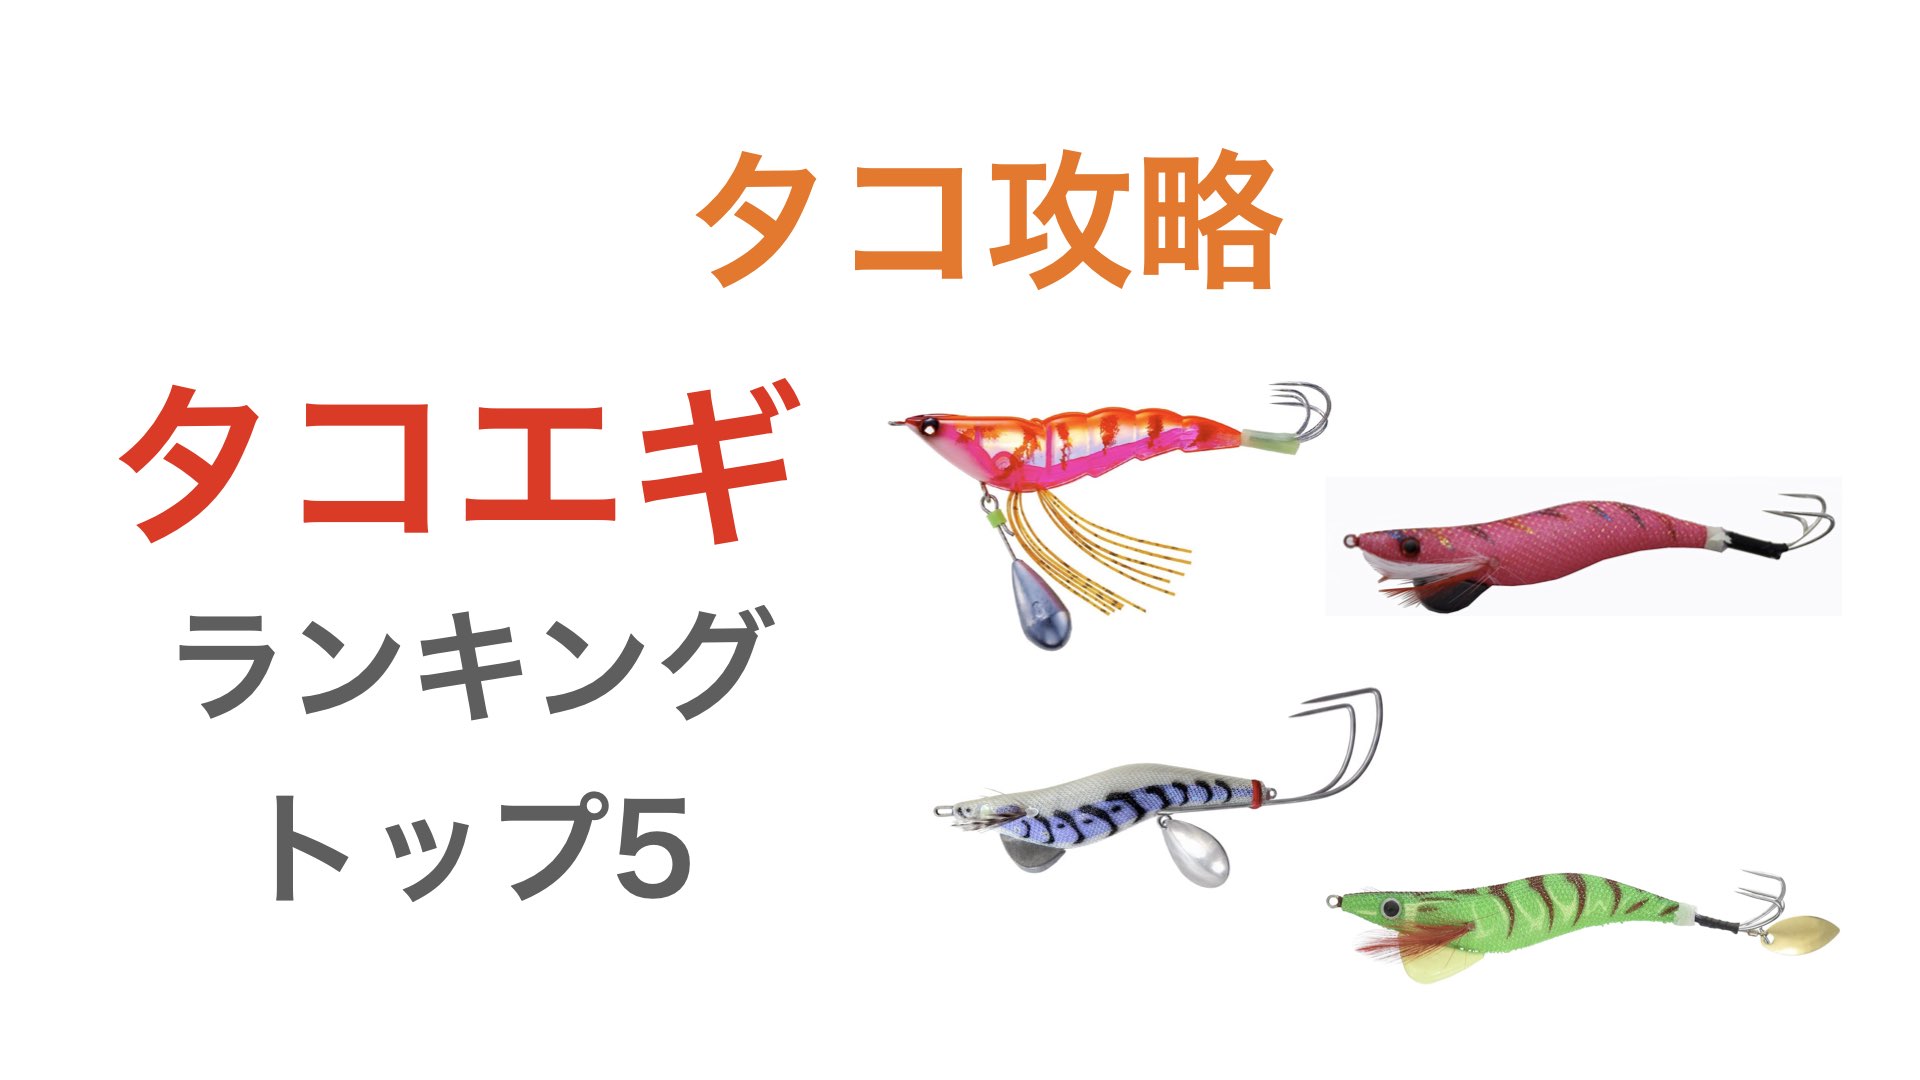 366円 特別価格 YO-ZURI ヨーヅリ エギ タコ : タコやん 2.5号 HGP: ホロゴールドピンク